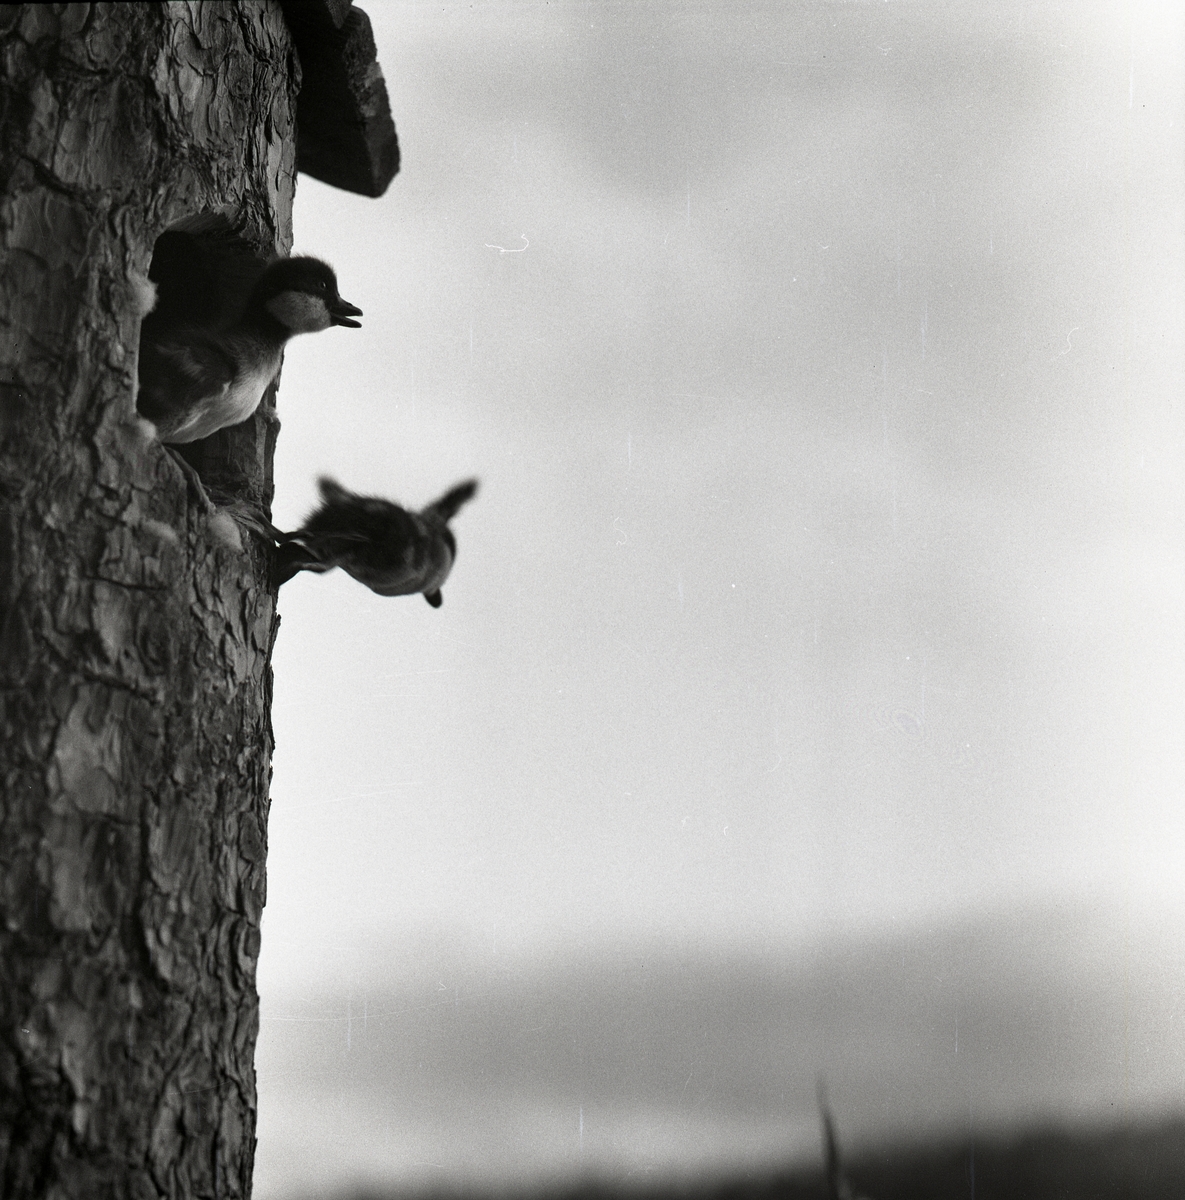 Två knipungar hoppar ut från en fågelholk där de kläckts, Skidtjärn den 1 juni 1960.